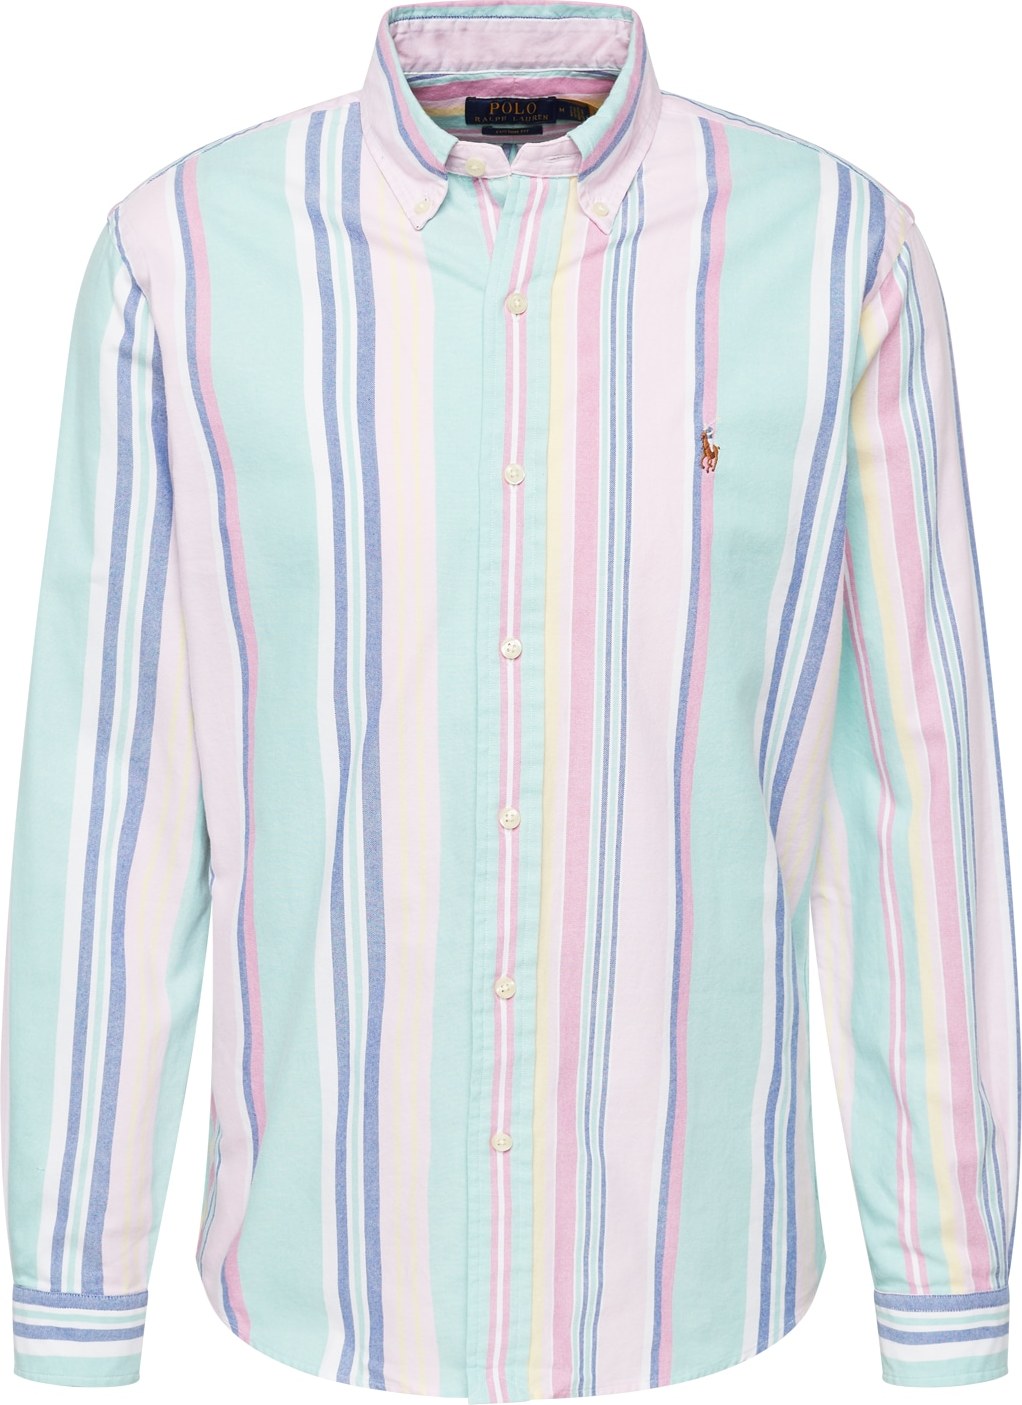 Polo Ralph Lauren Košile modrá / tyrkysová / pastelově růžová / bílá